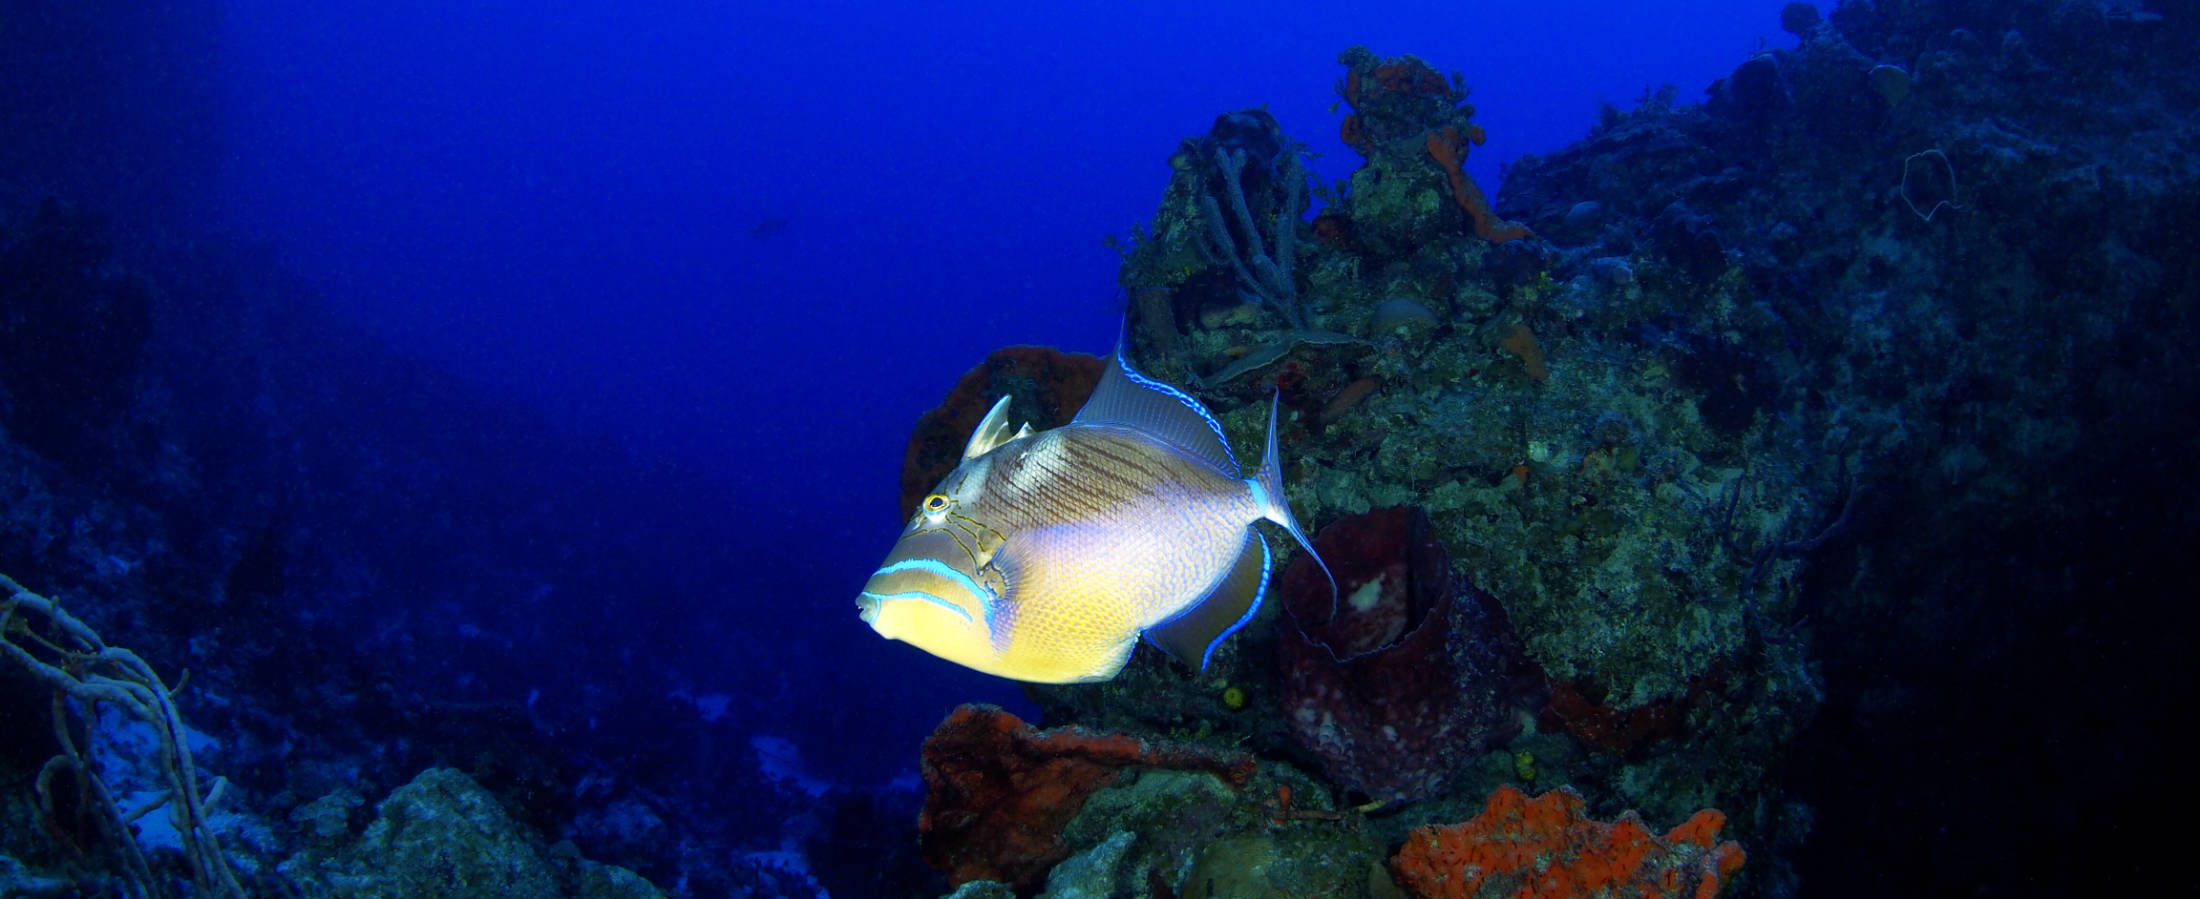 Queen Trigger at Shangri-La Dive Site, Bahamas